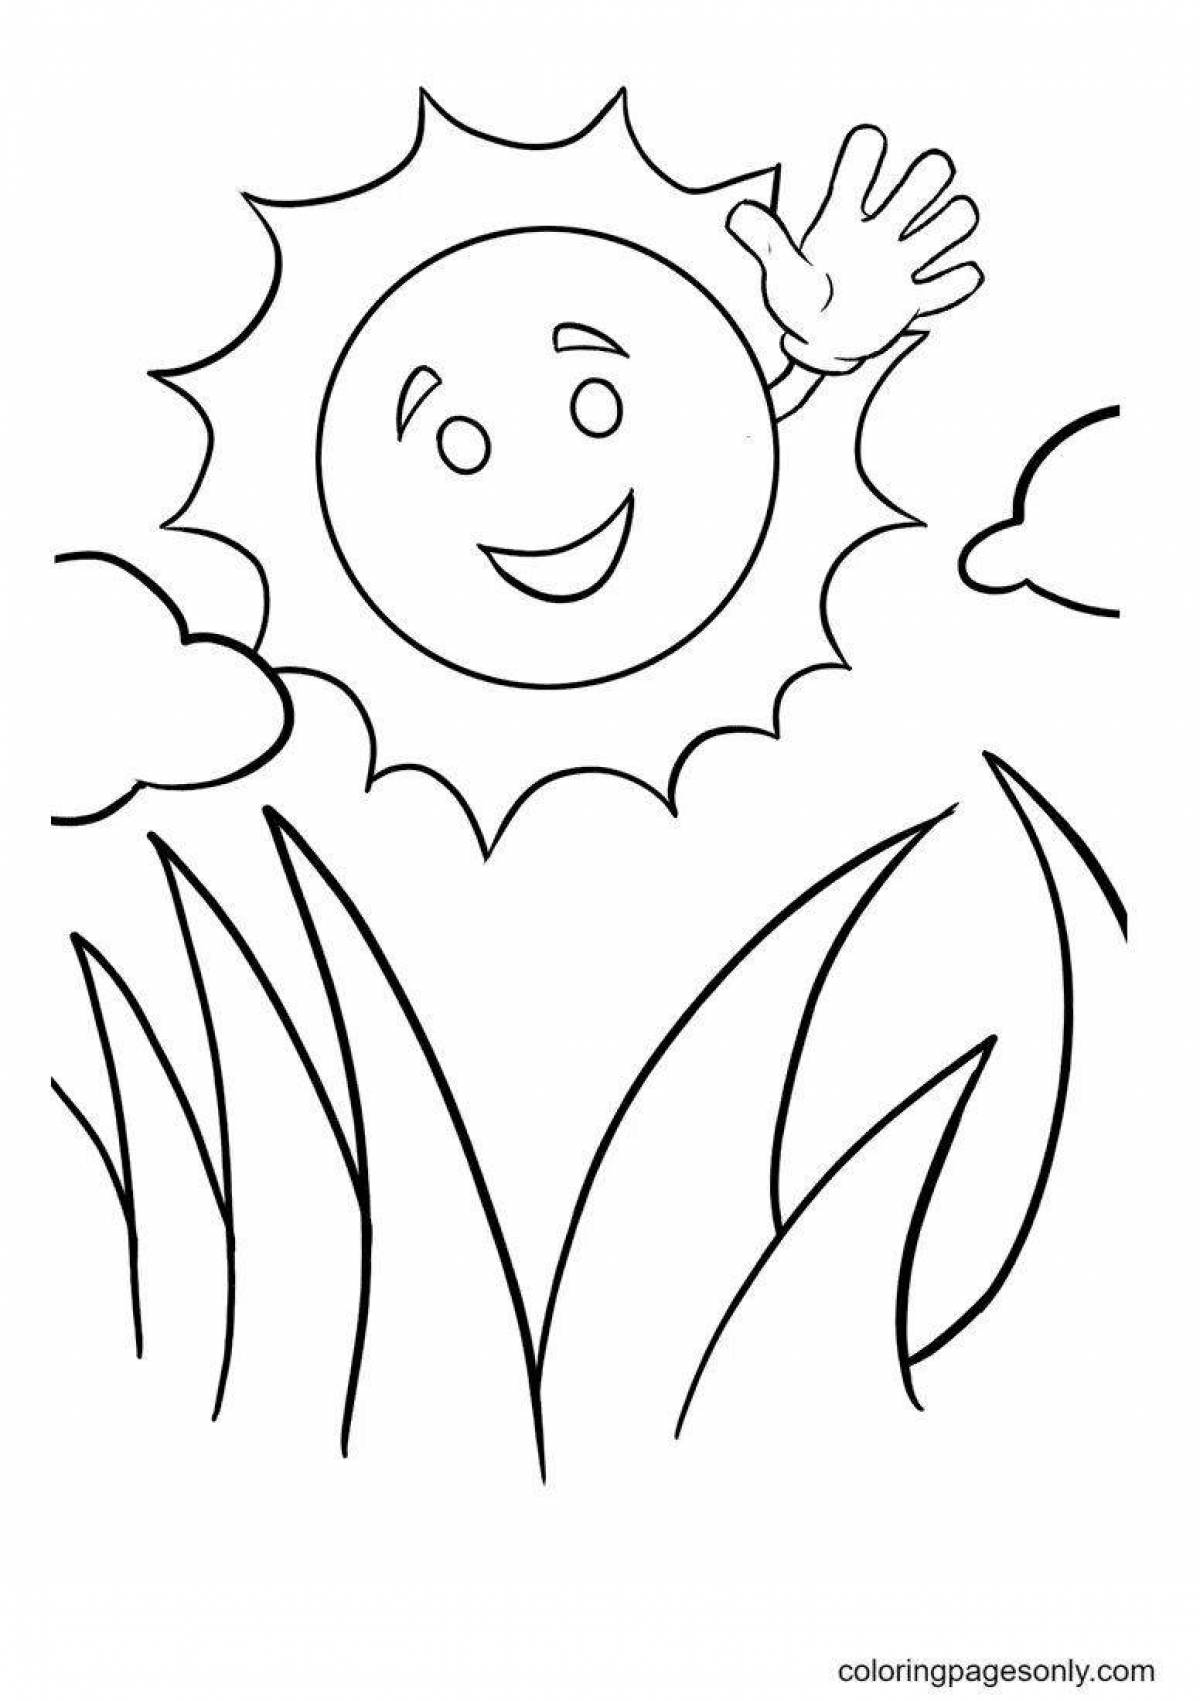 Радостная раскраска солнце для детей 3-4 лет